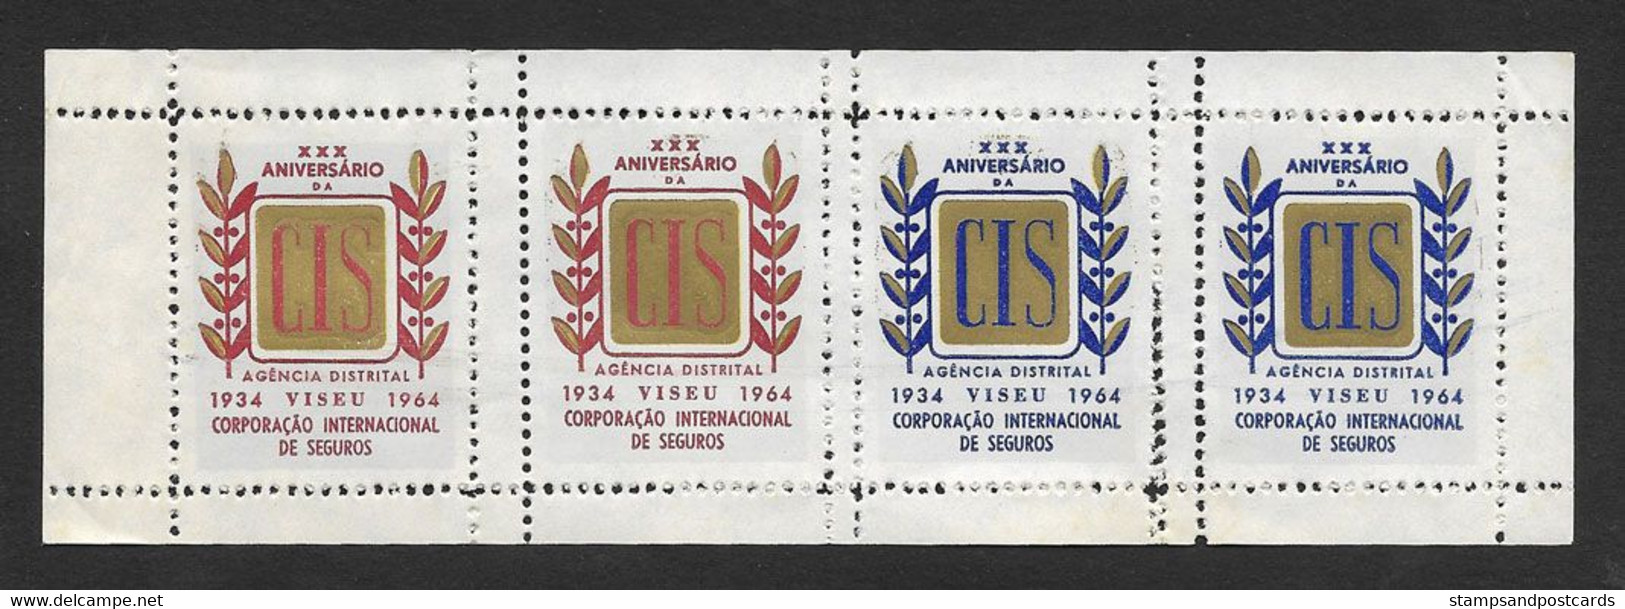 Portugal Feuillet Vignette Publicitaire 1964 Viseu Compagnie Assurance Internationale Insurance Pub Cinderella Sheetlet - Local Post Stamps